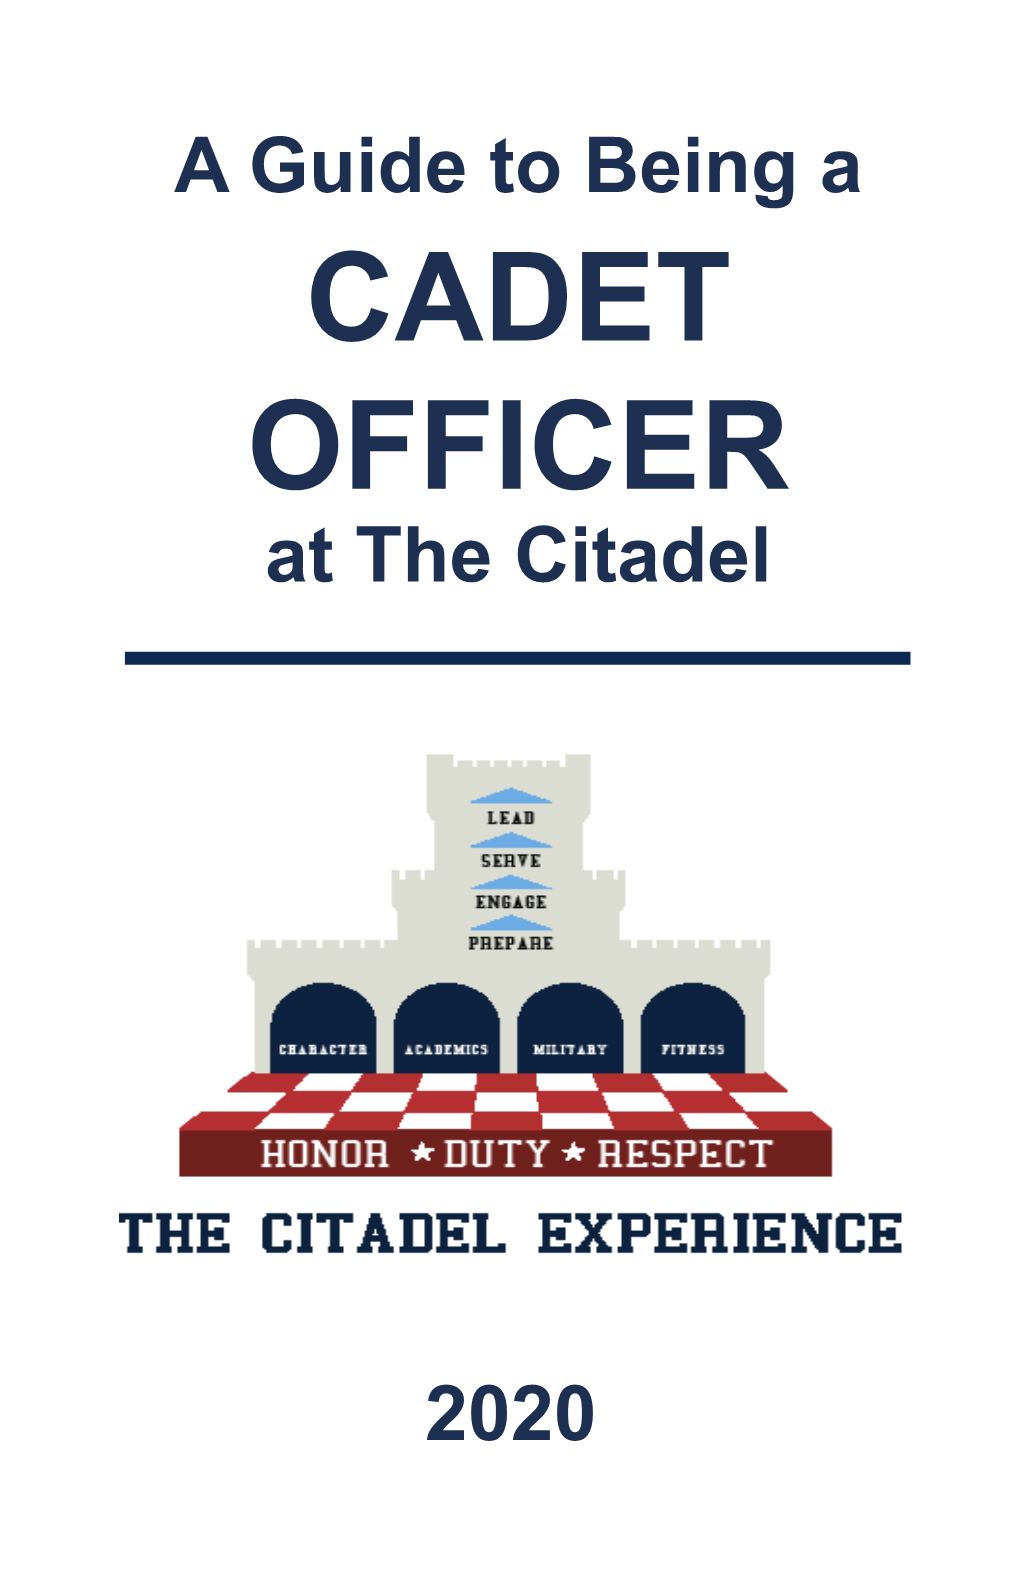 CADET OFFICER at the Citadel